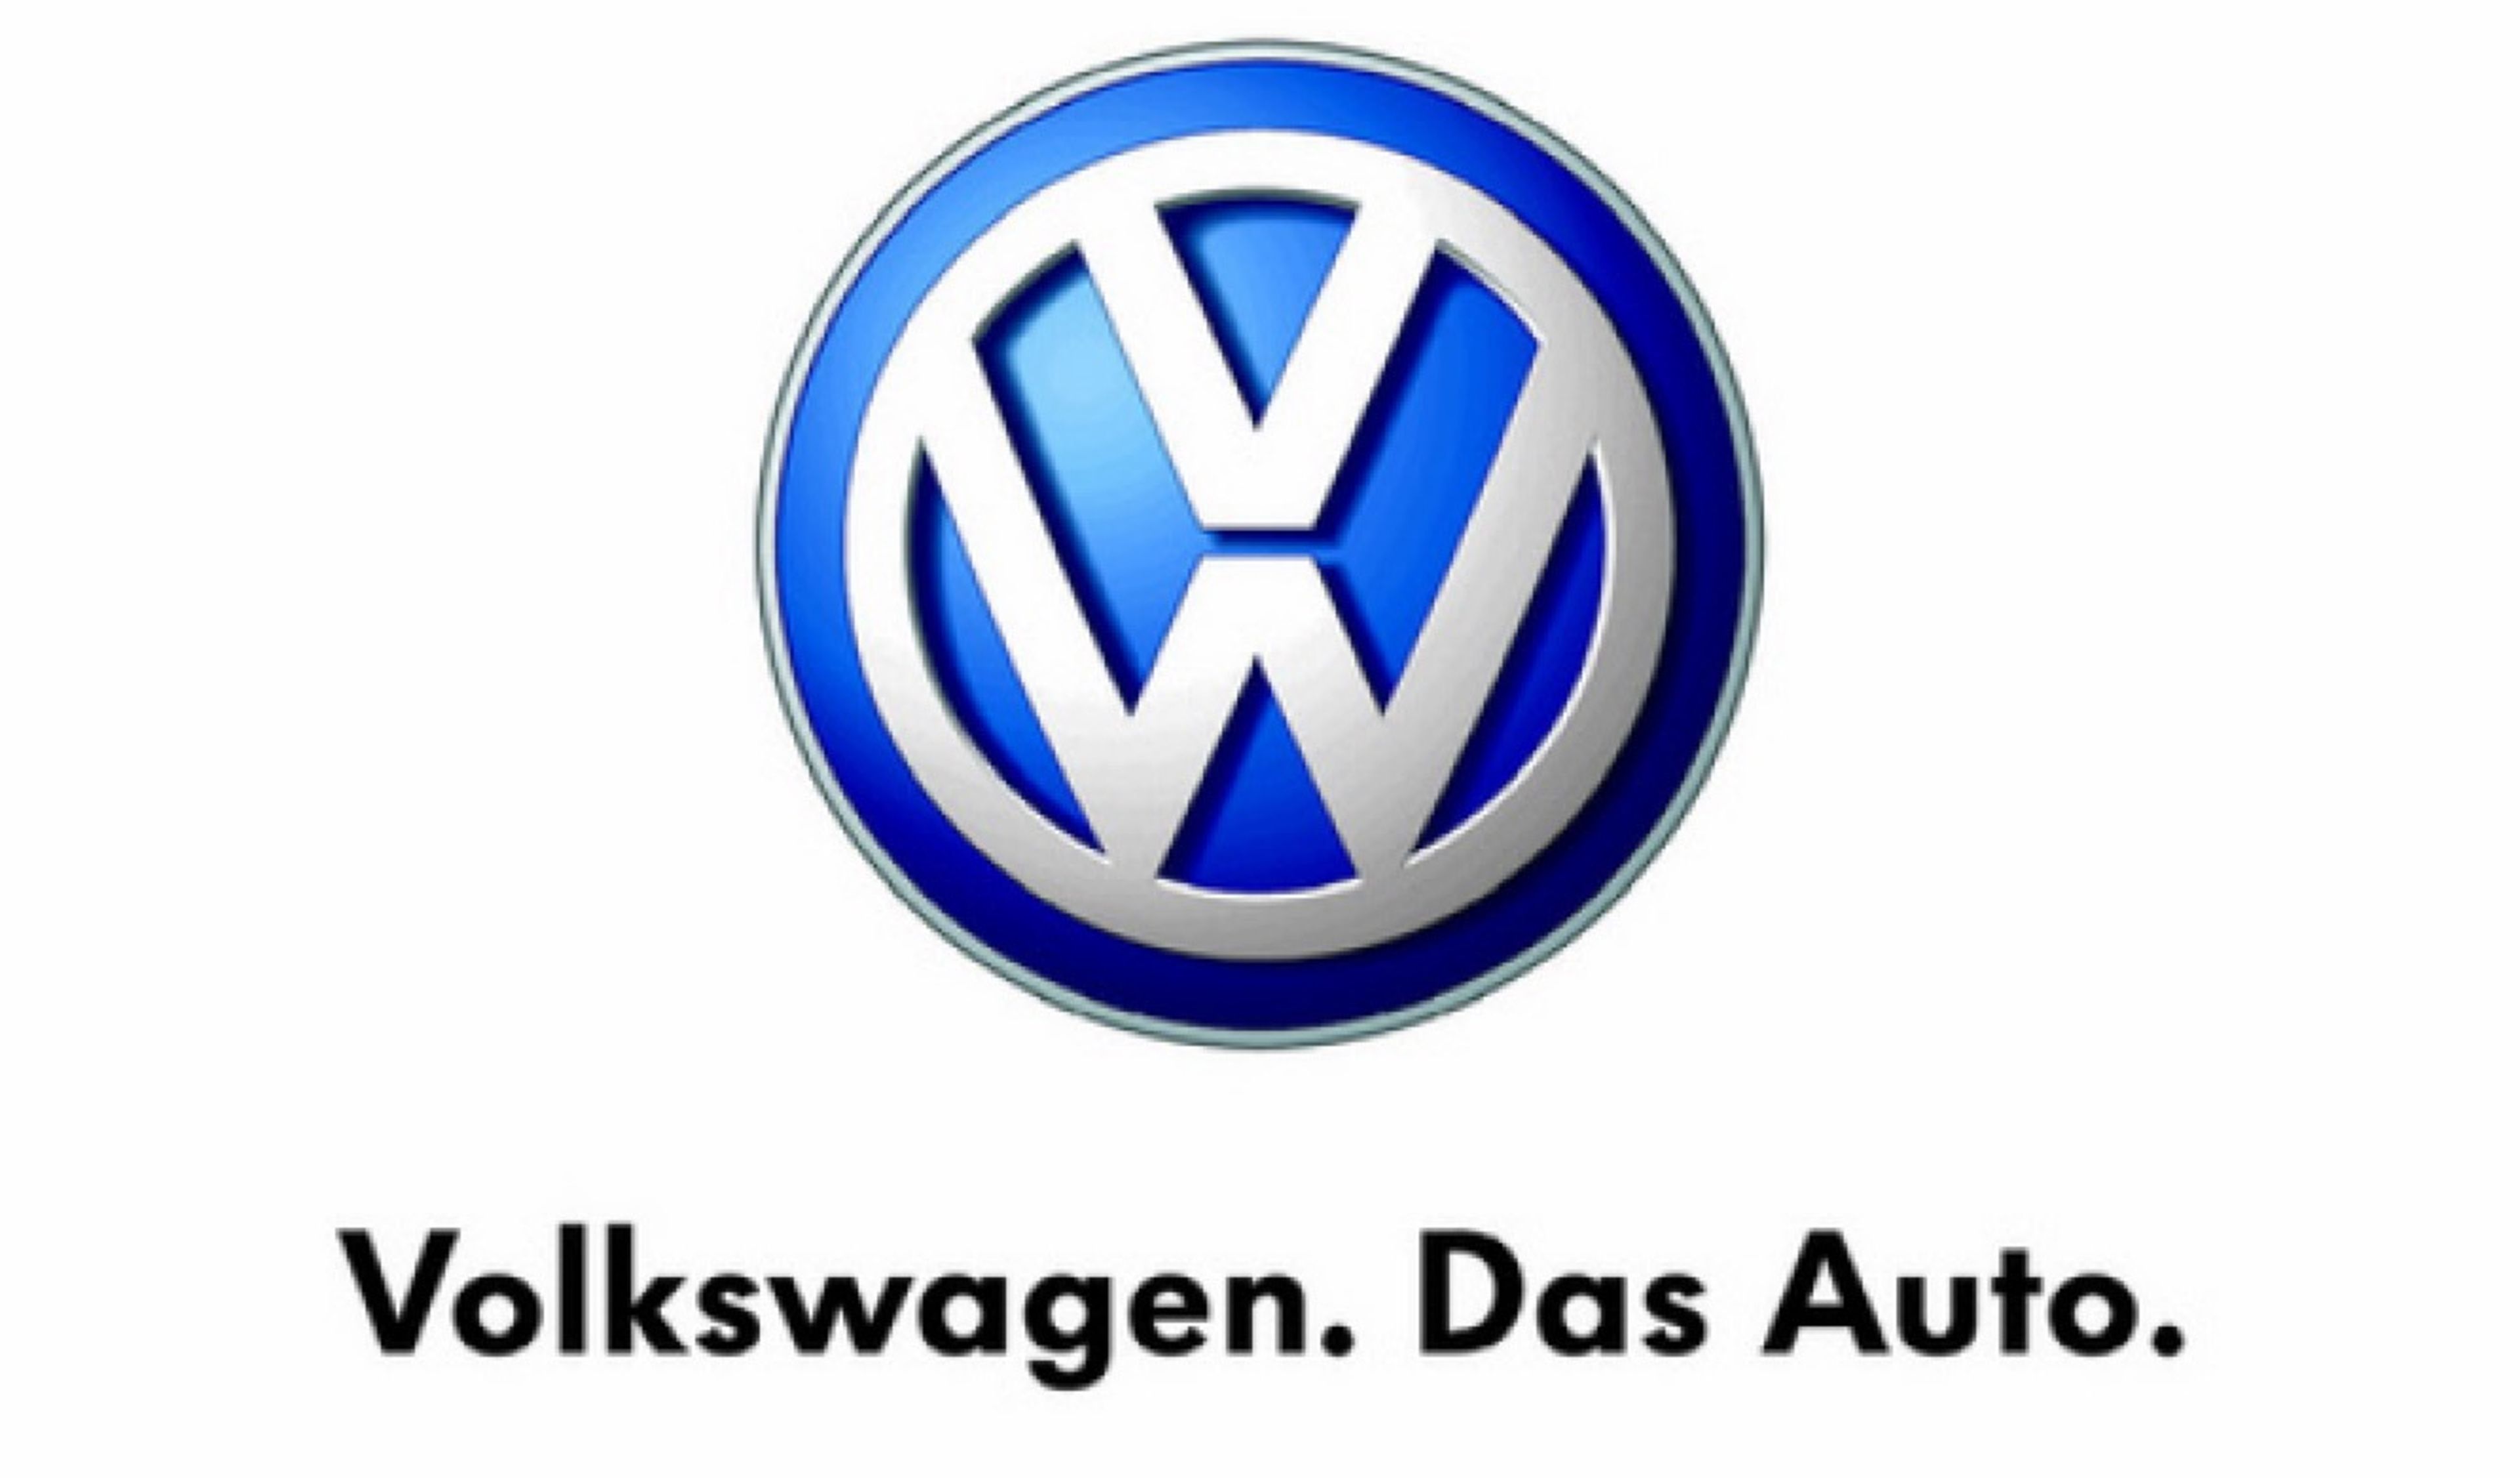 Volkswagen elimina su lema 'Das Auto'